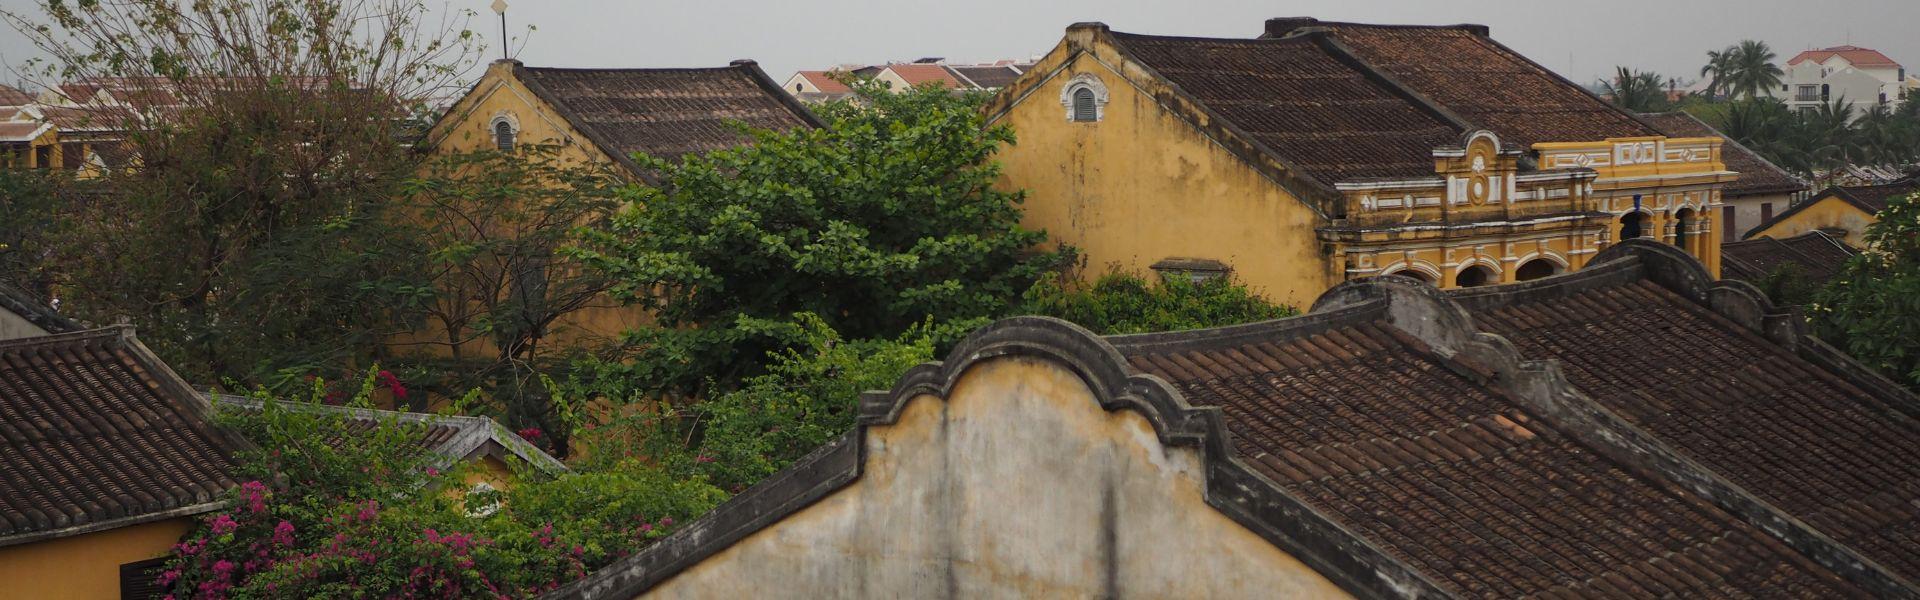 Hoi An : Guide complet de l'ancienne ville du Vietnam